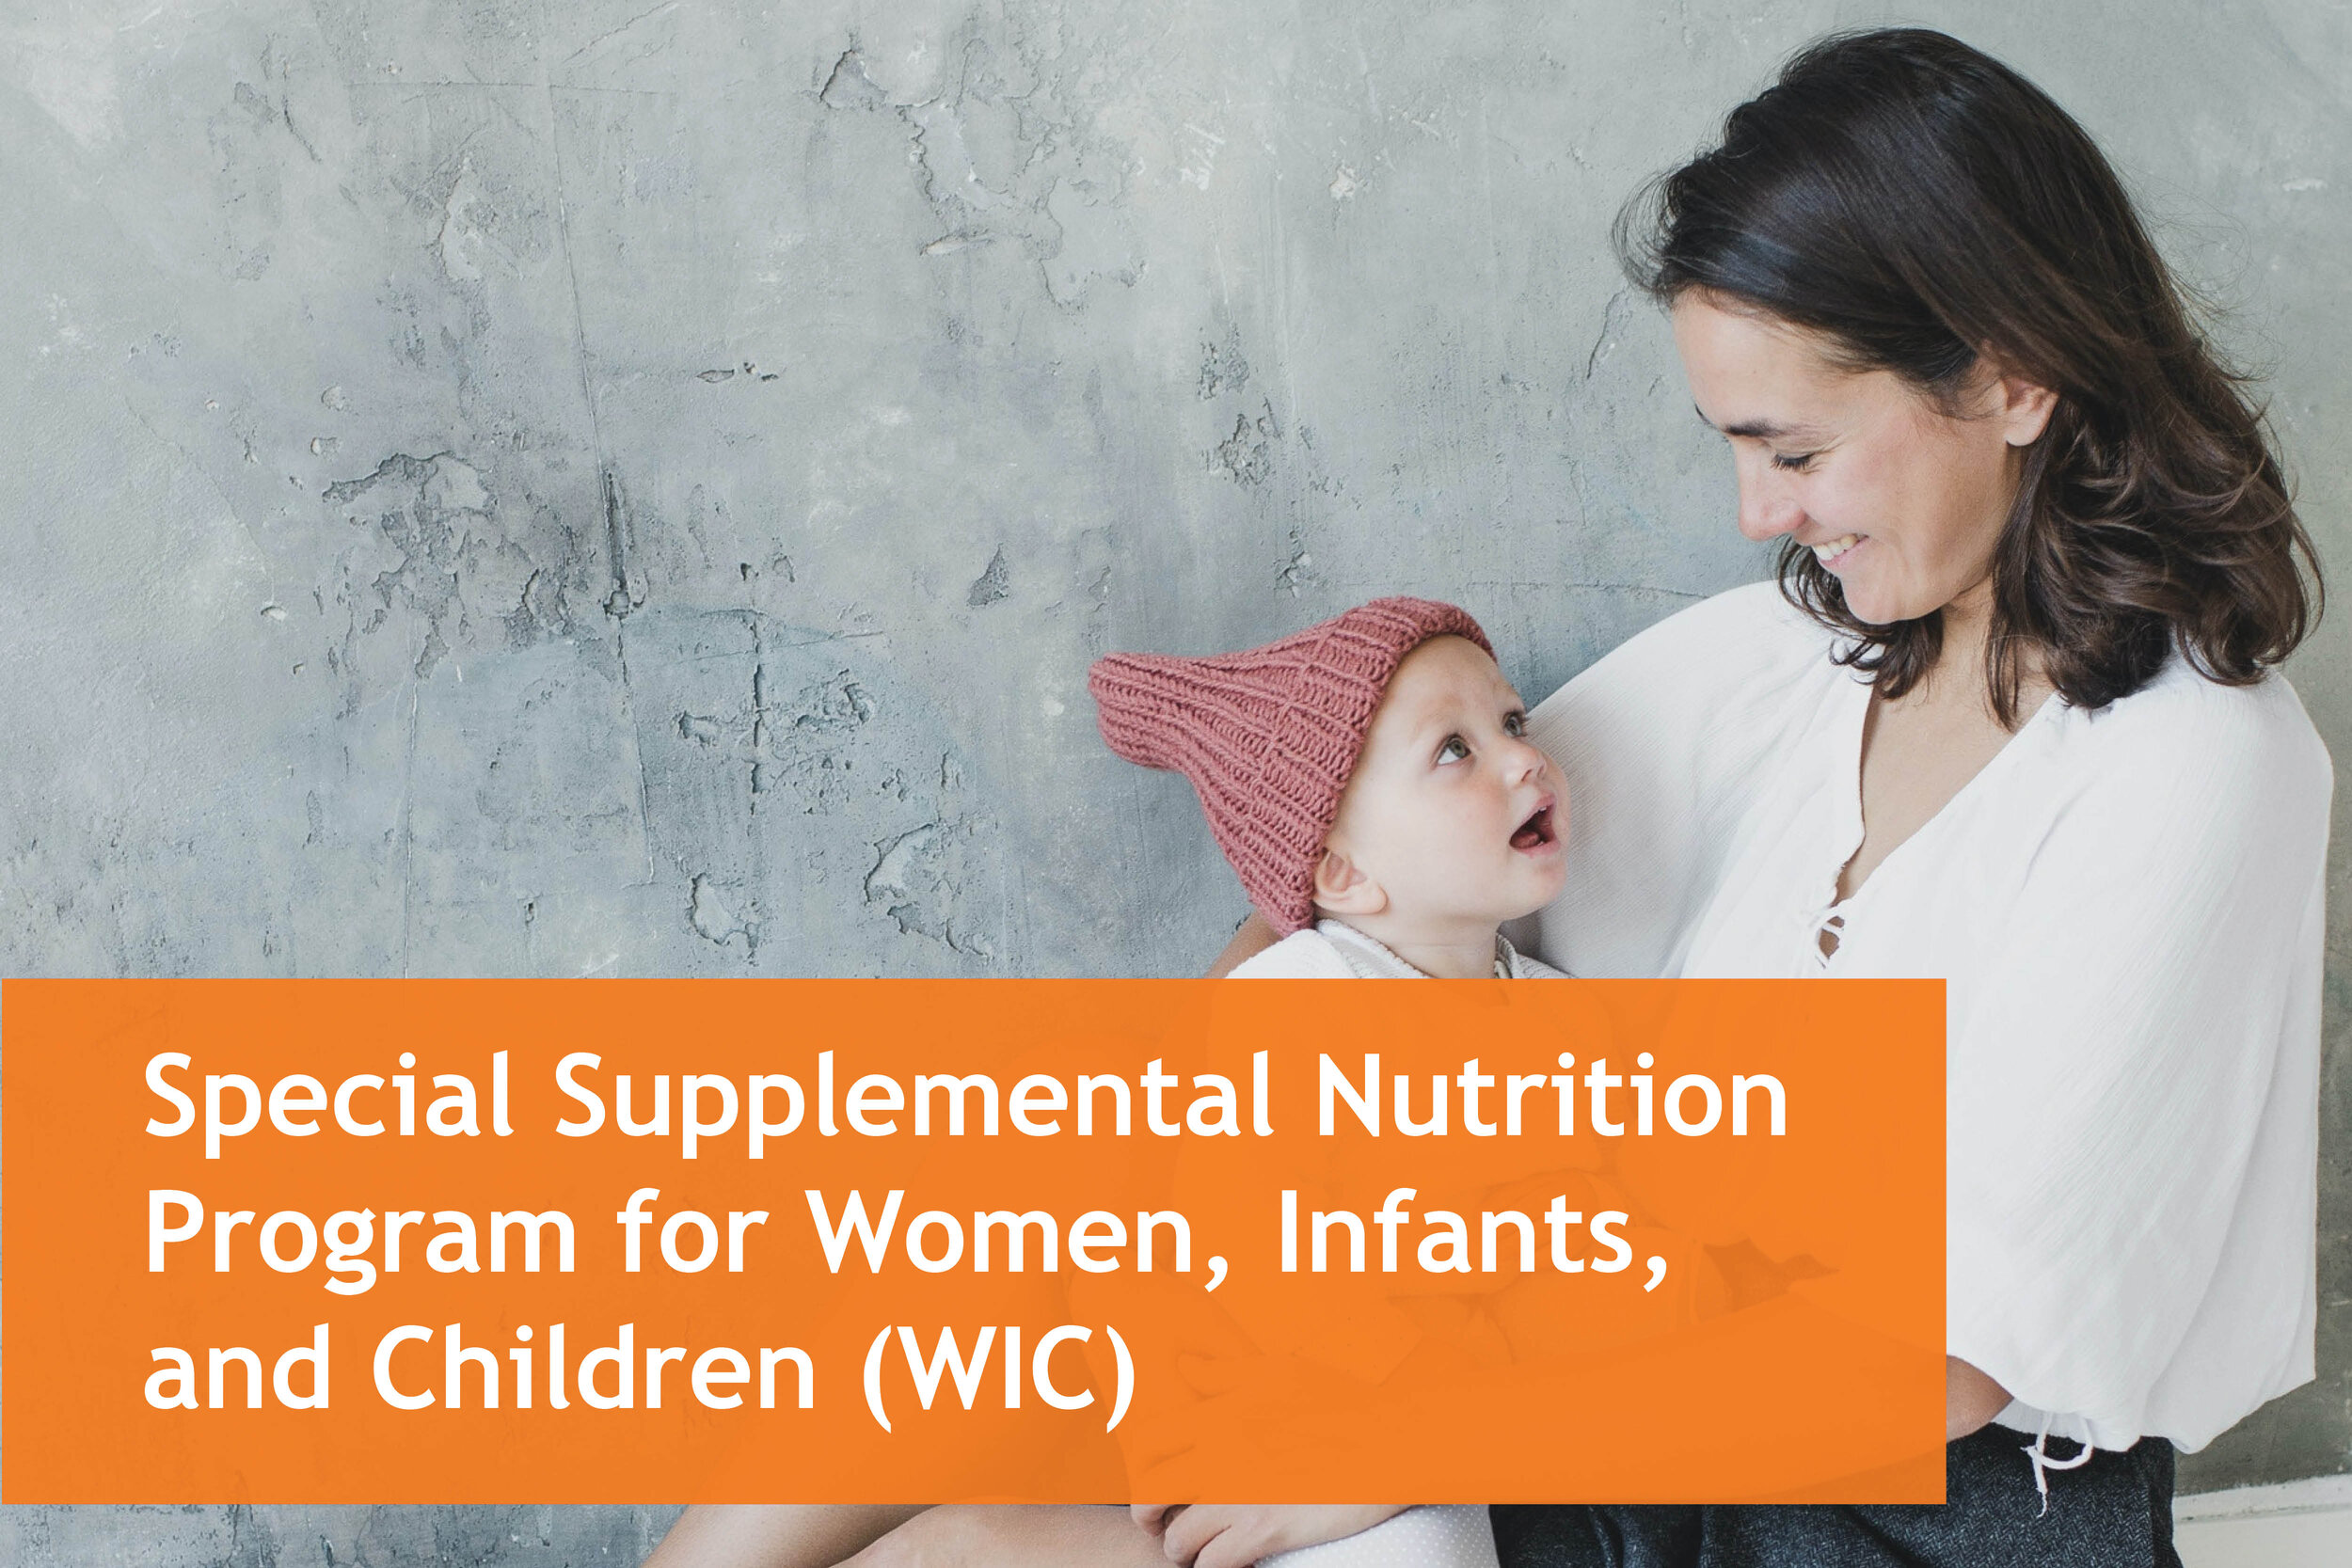 Understanding WIC (Women, Infants, and Children)